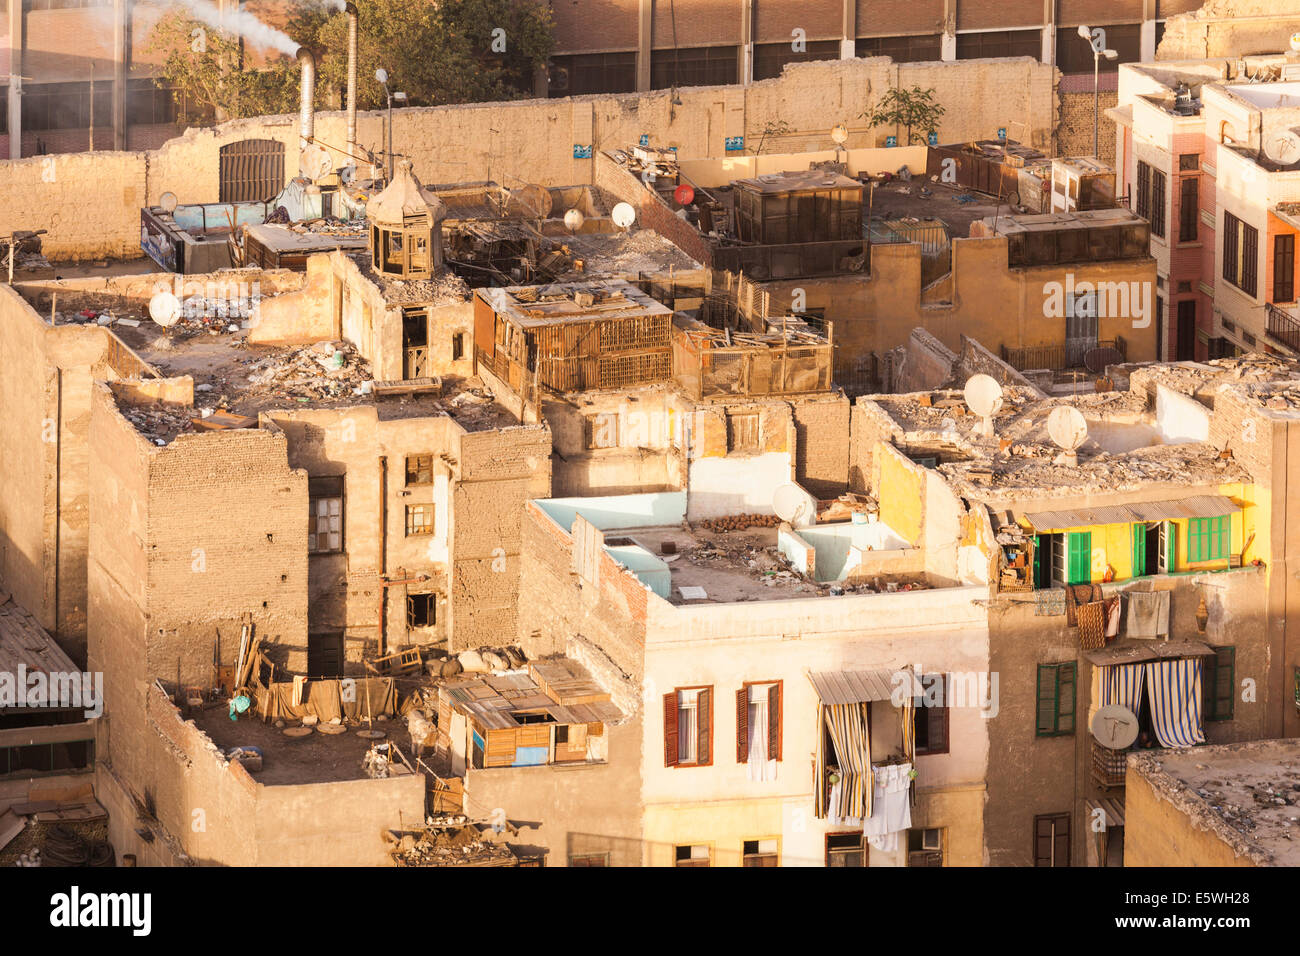 Le Caire, Égypte - toitures de bâtiments des taudis au centre-ville de Cairo city center Banque D'Images